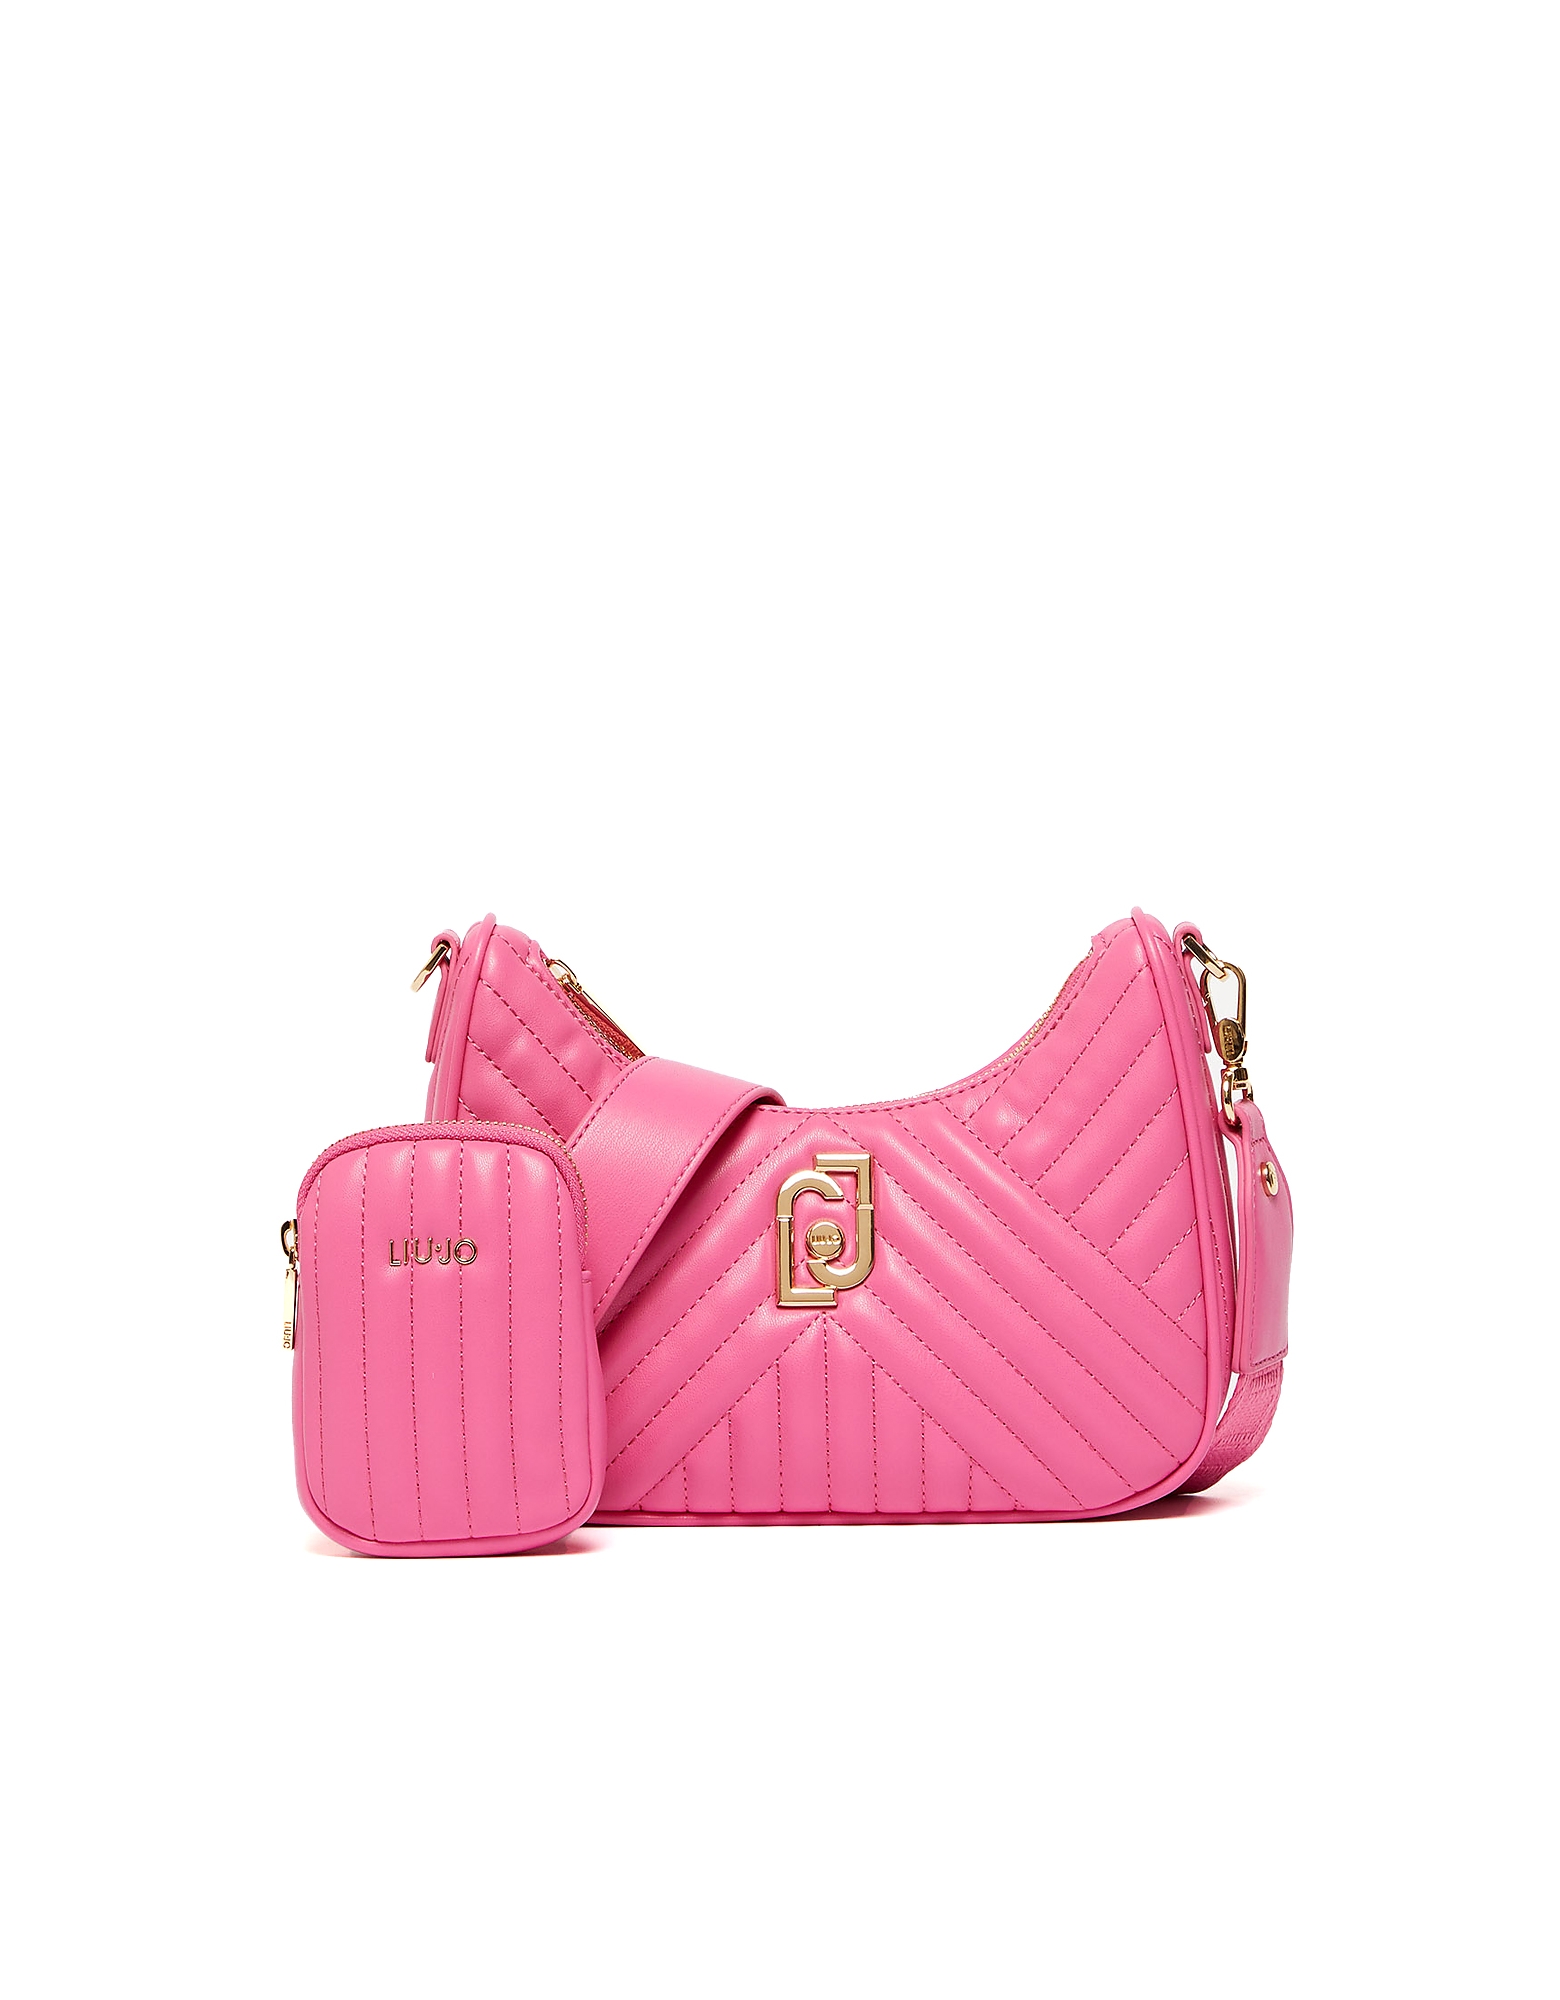 Liu •jo Designer Handbags Women's Pink Bag In Rose